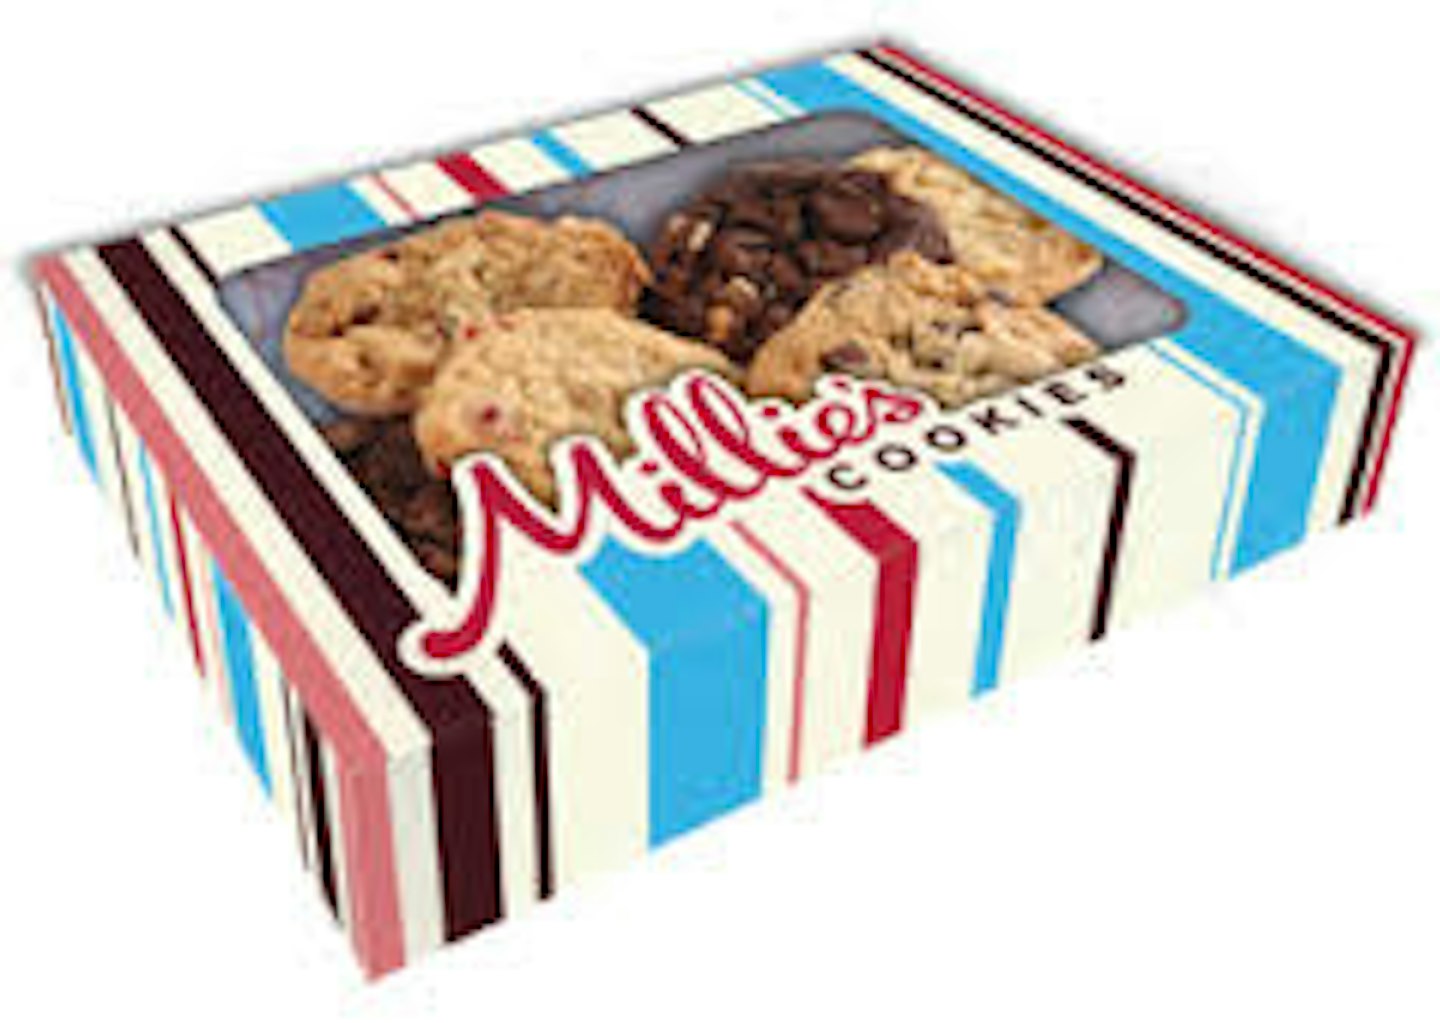 millies-cookies